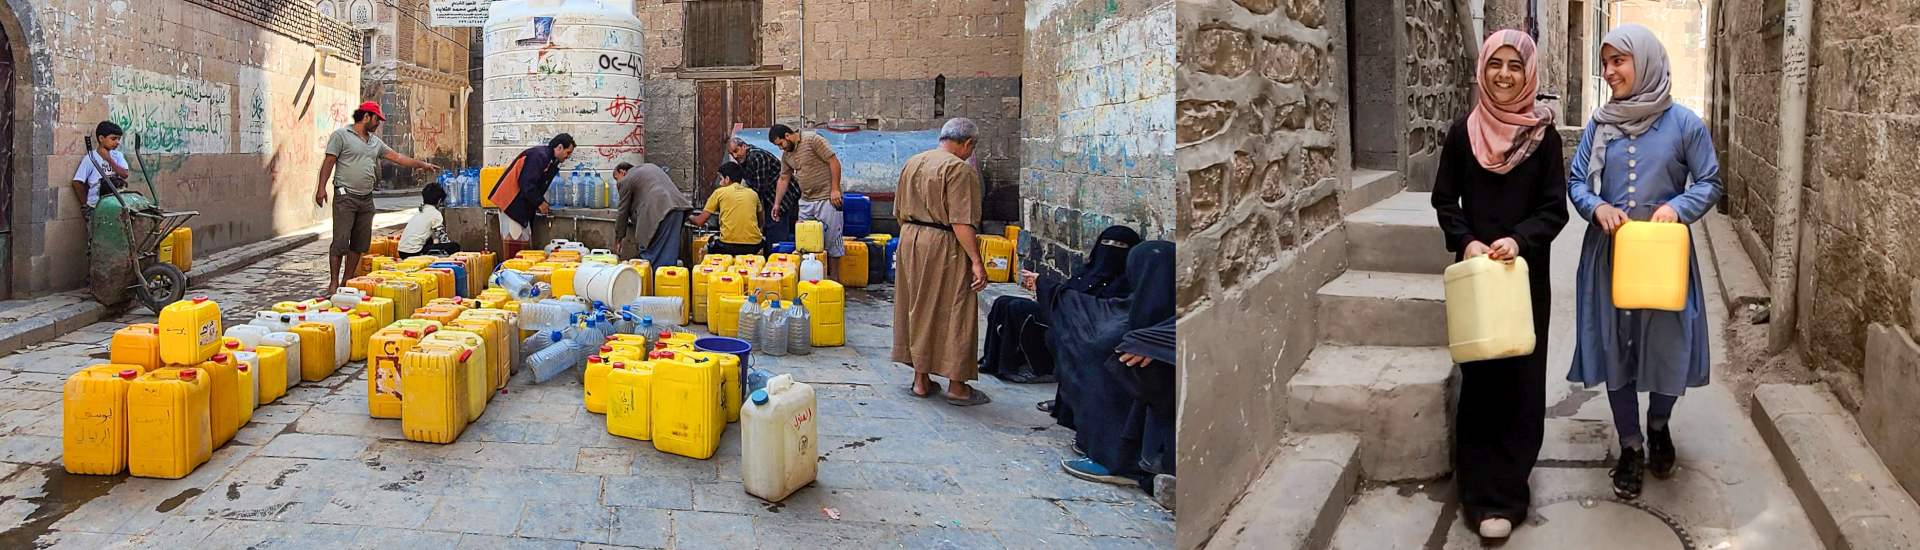 Jemen: Bessere Wasserversorgung hilft Schulkindern